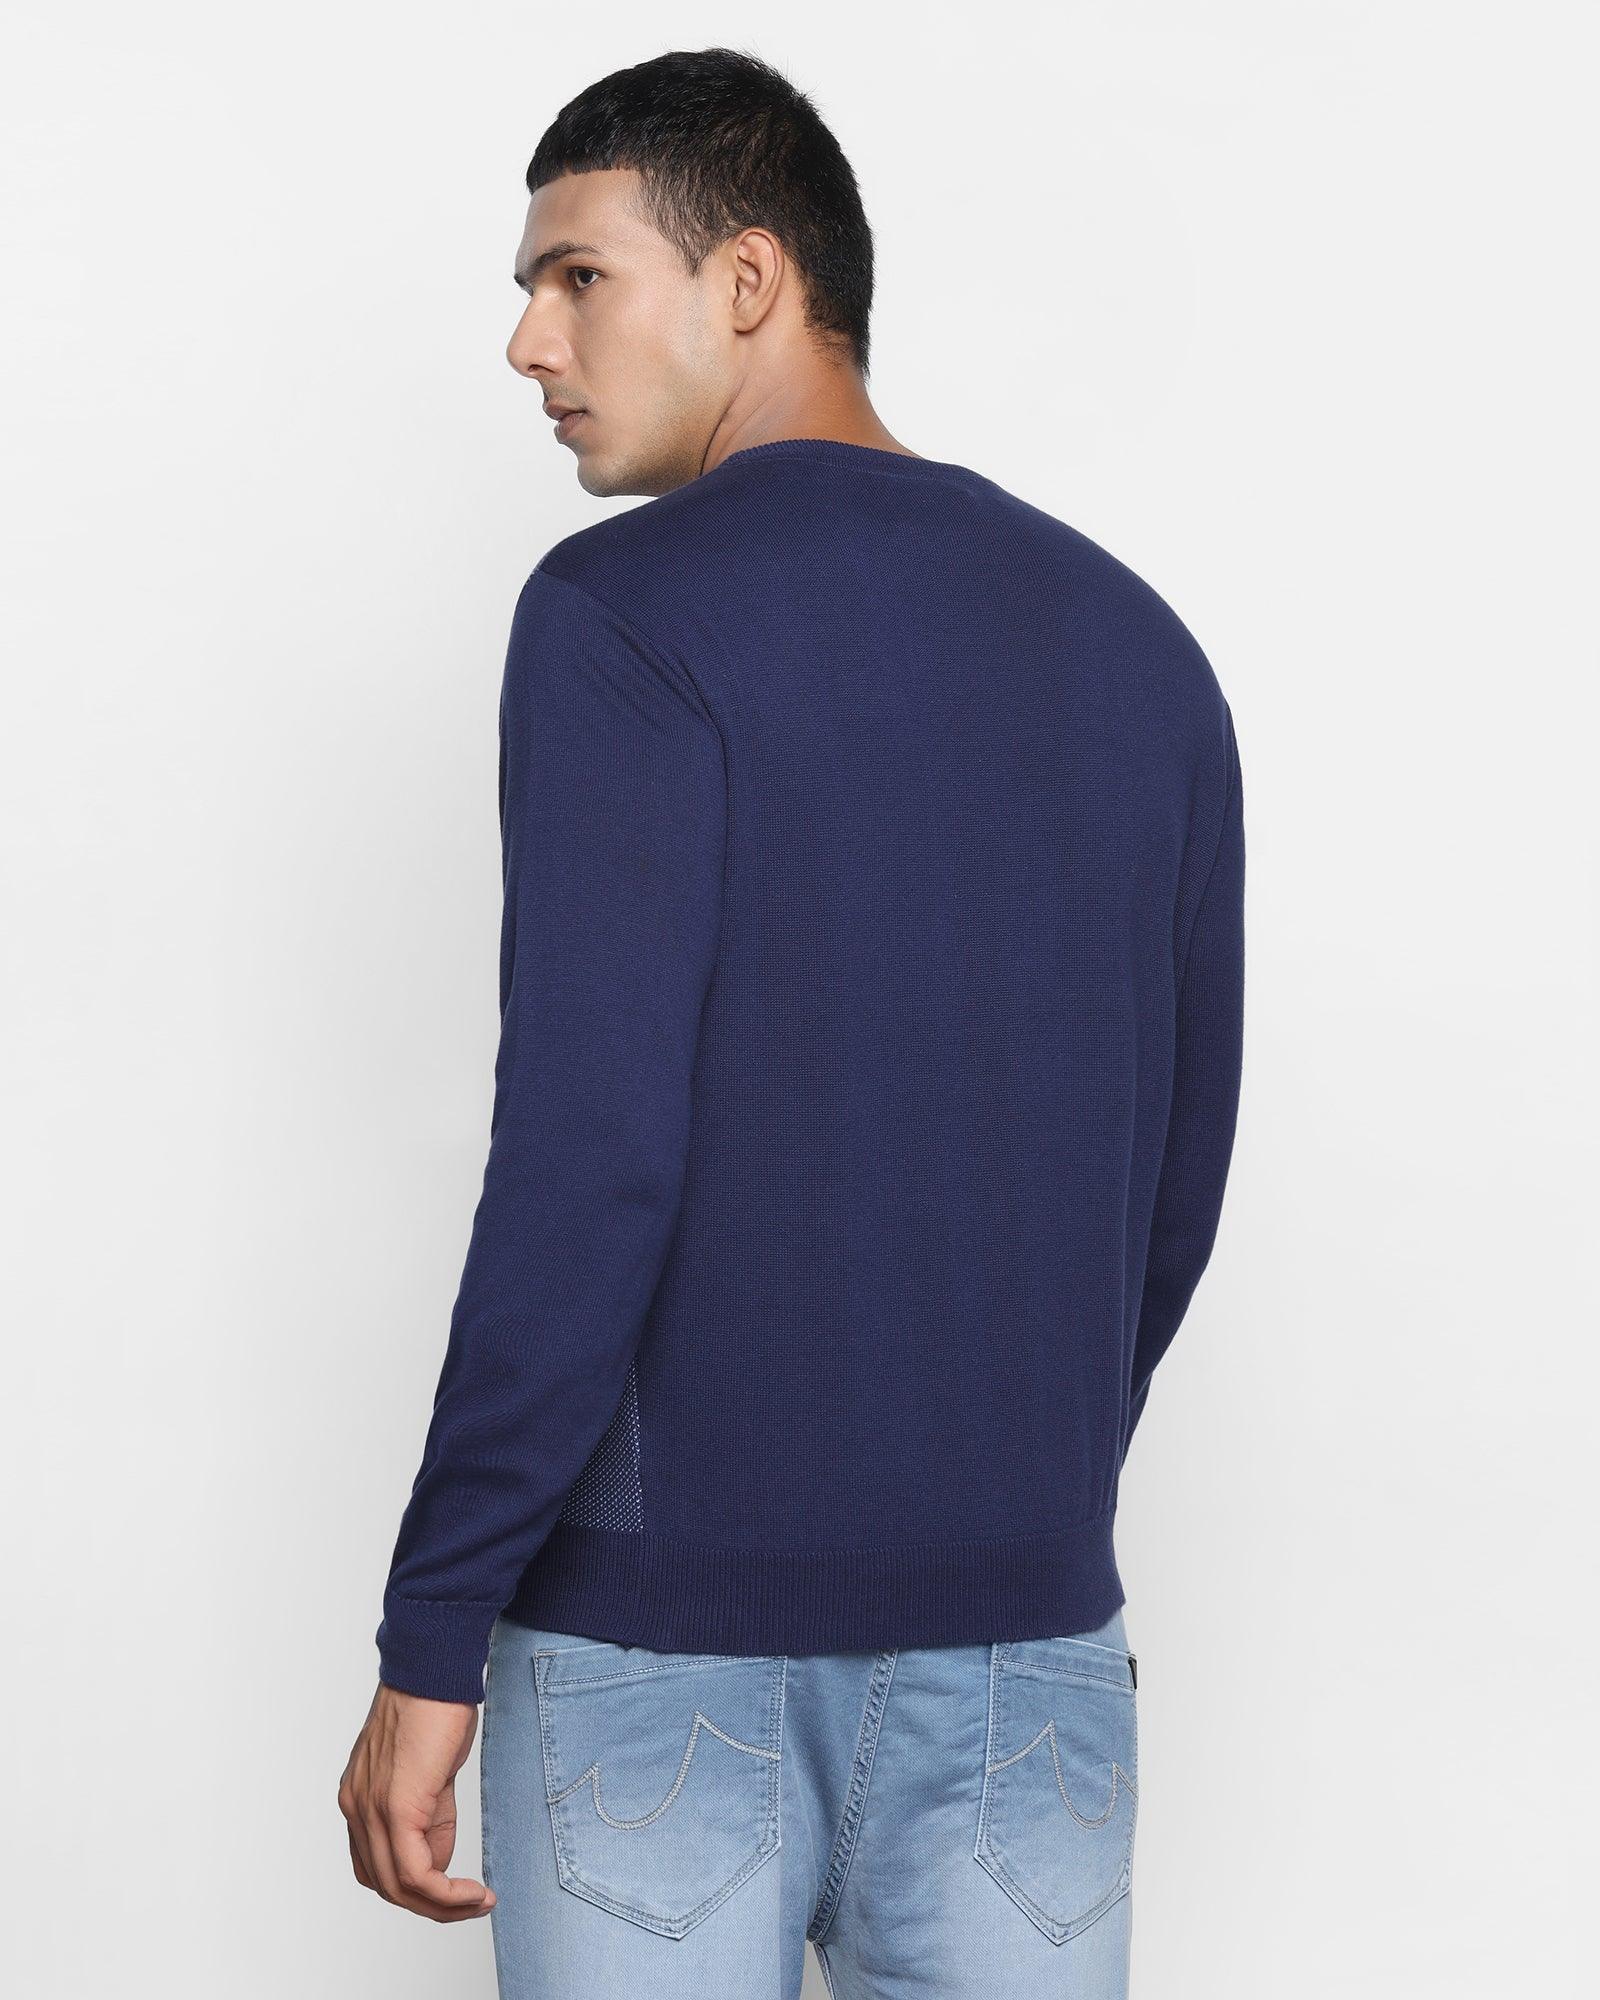 Crew Neck Ink Blue Textured Sweater - Jaxon